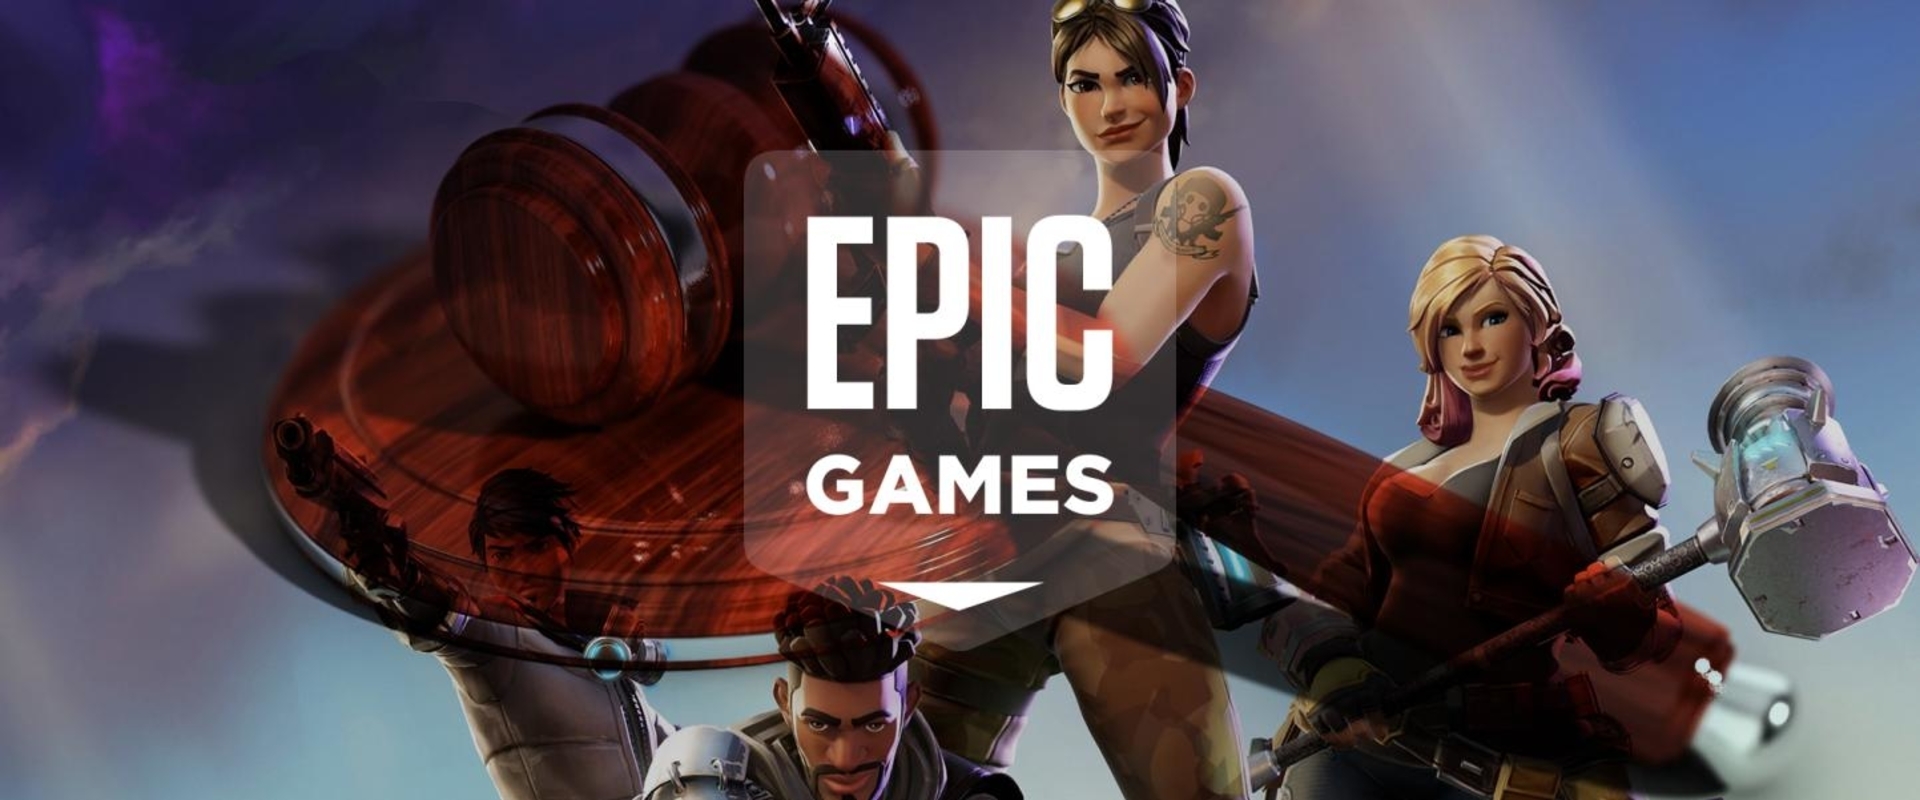 Az Epic Games perre ment a borzalmasra sikerült norwichi rendezvény szervezőivel